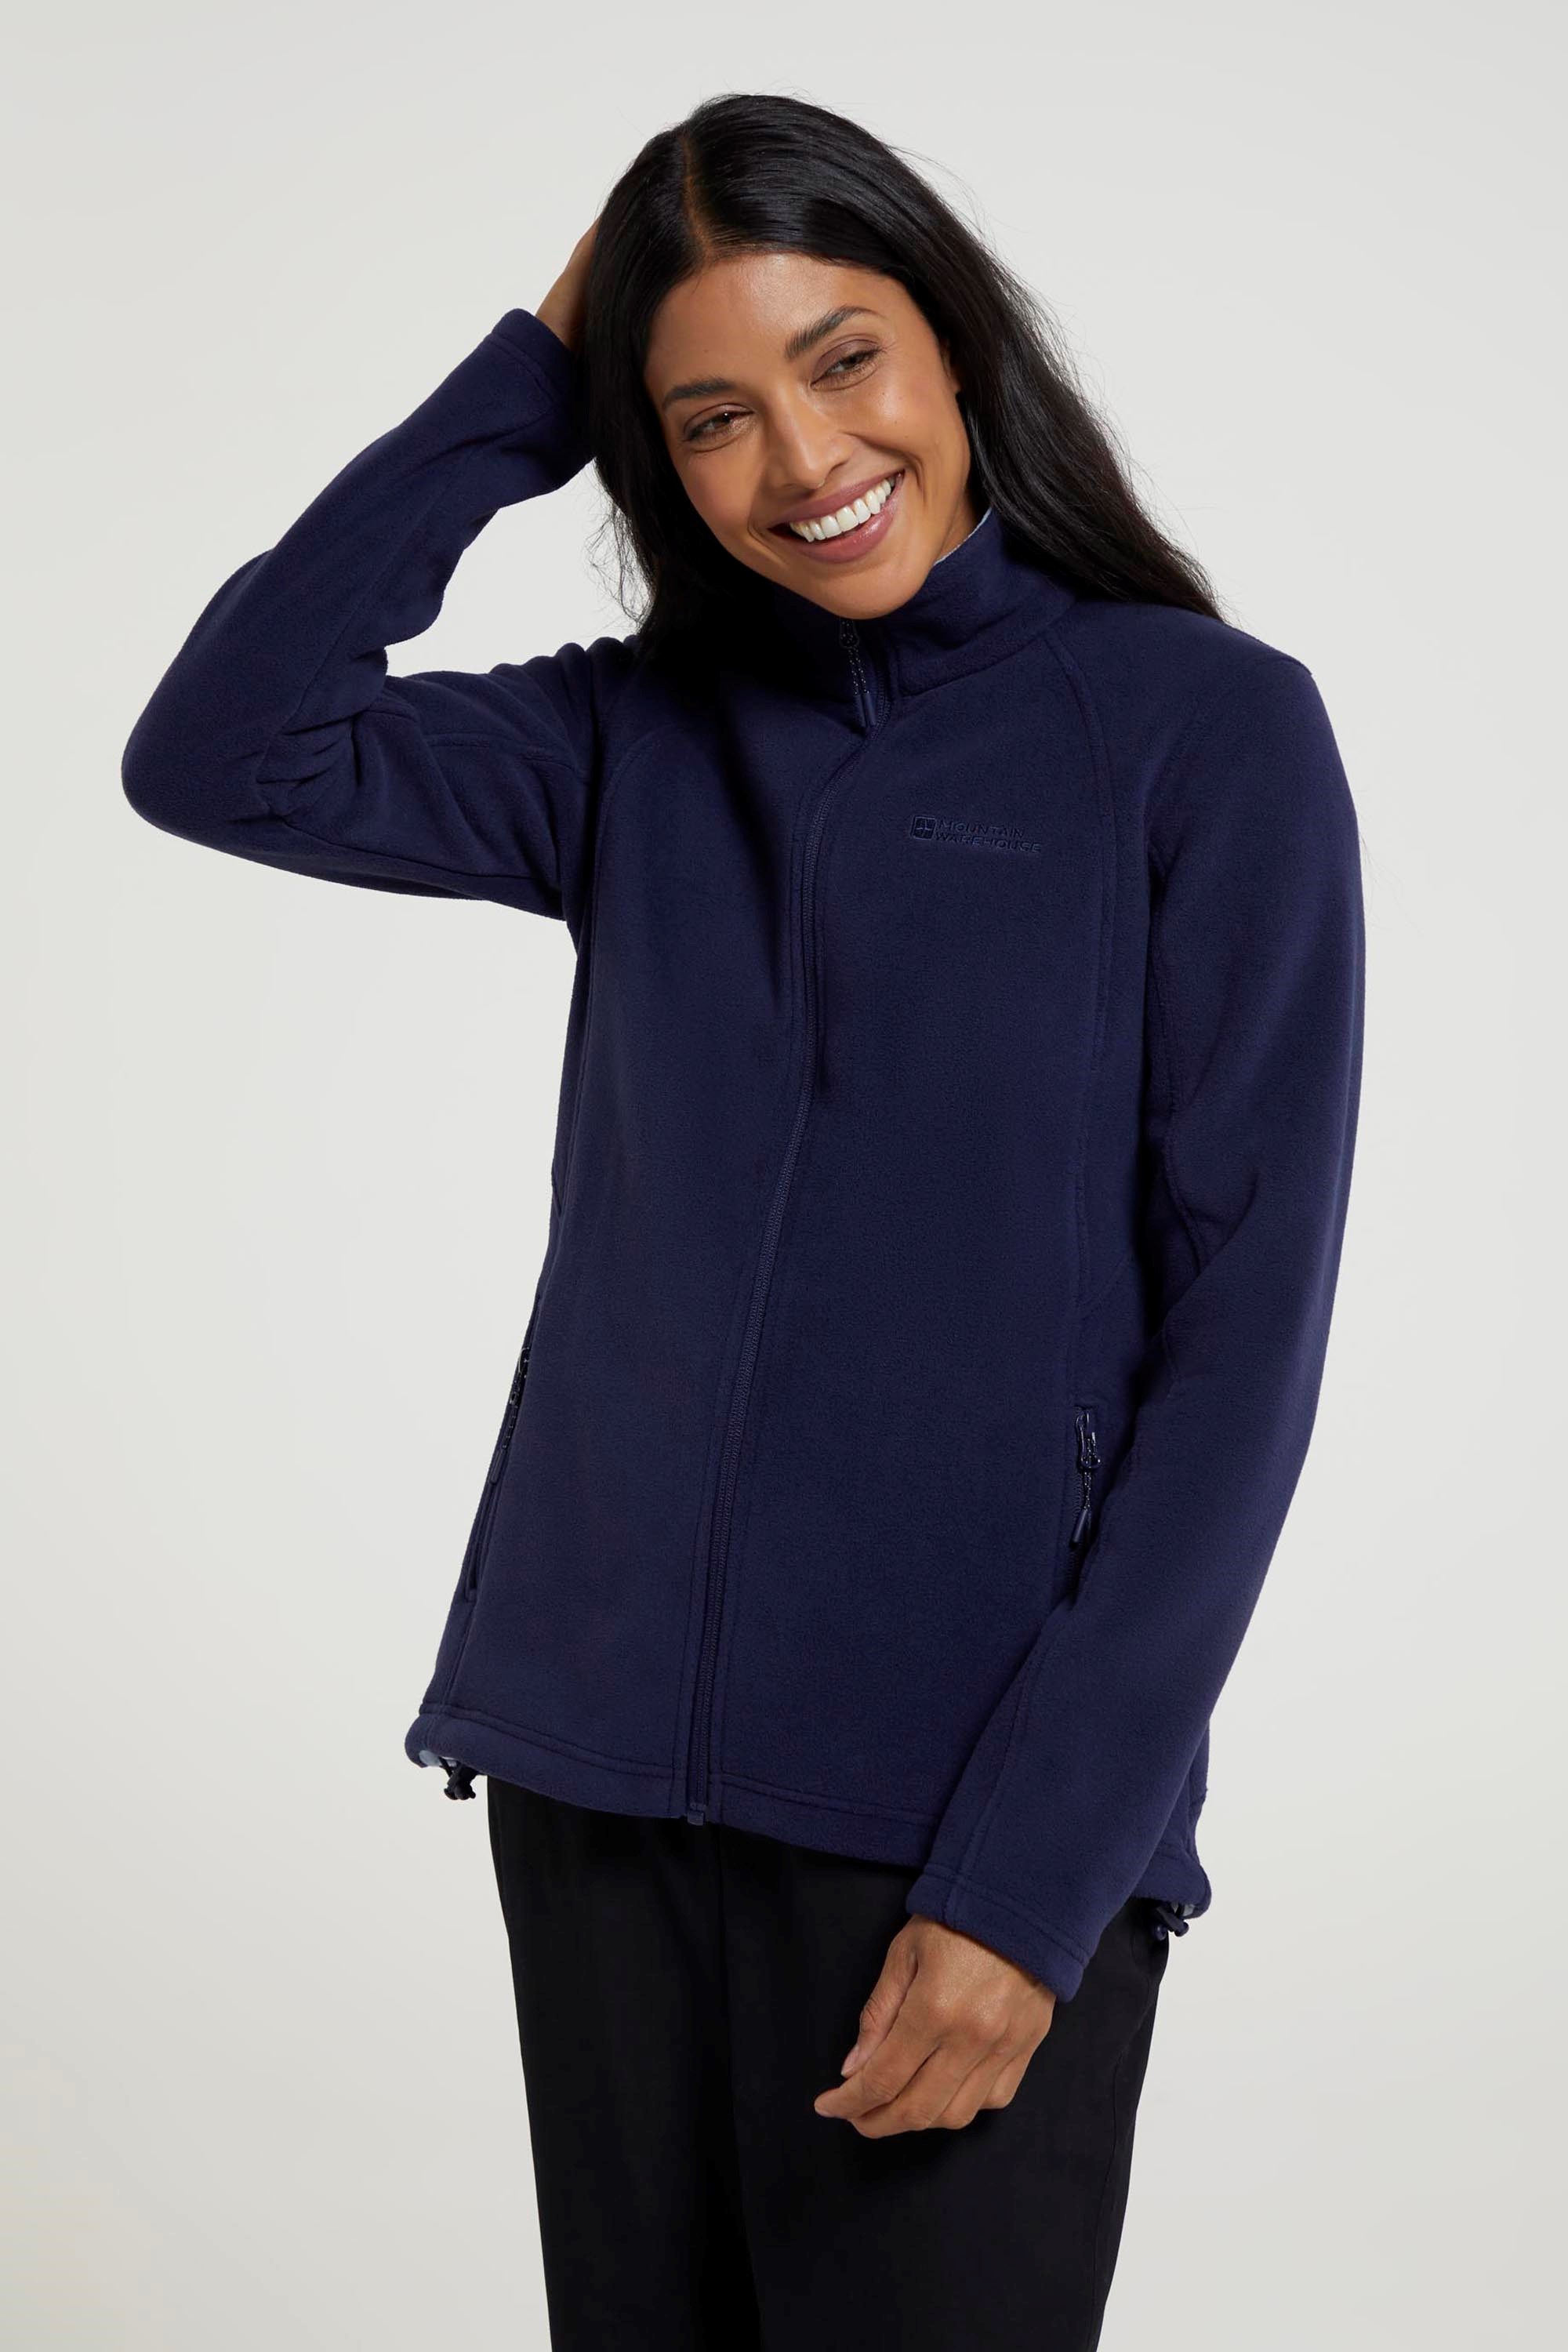 Sky Womens Full-Zip Fleece Jacket